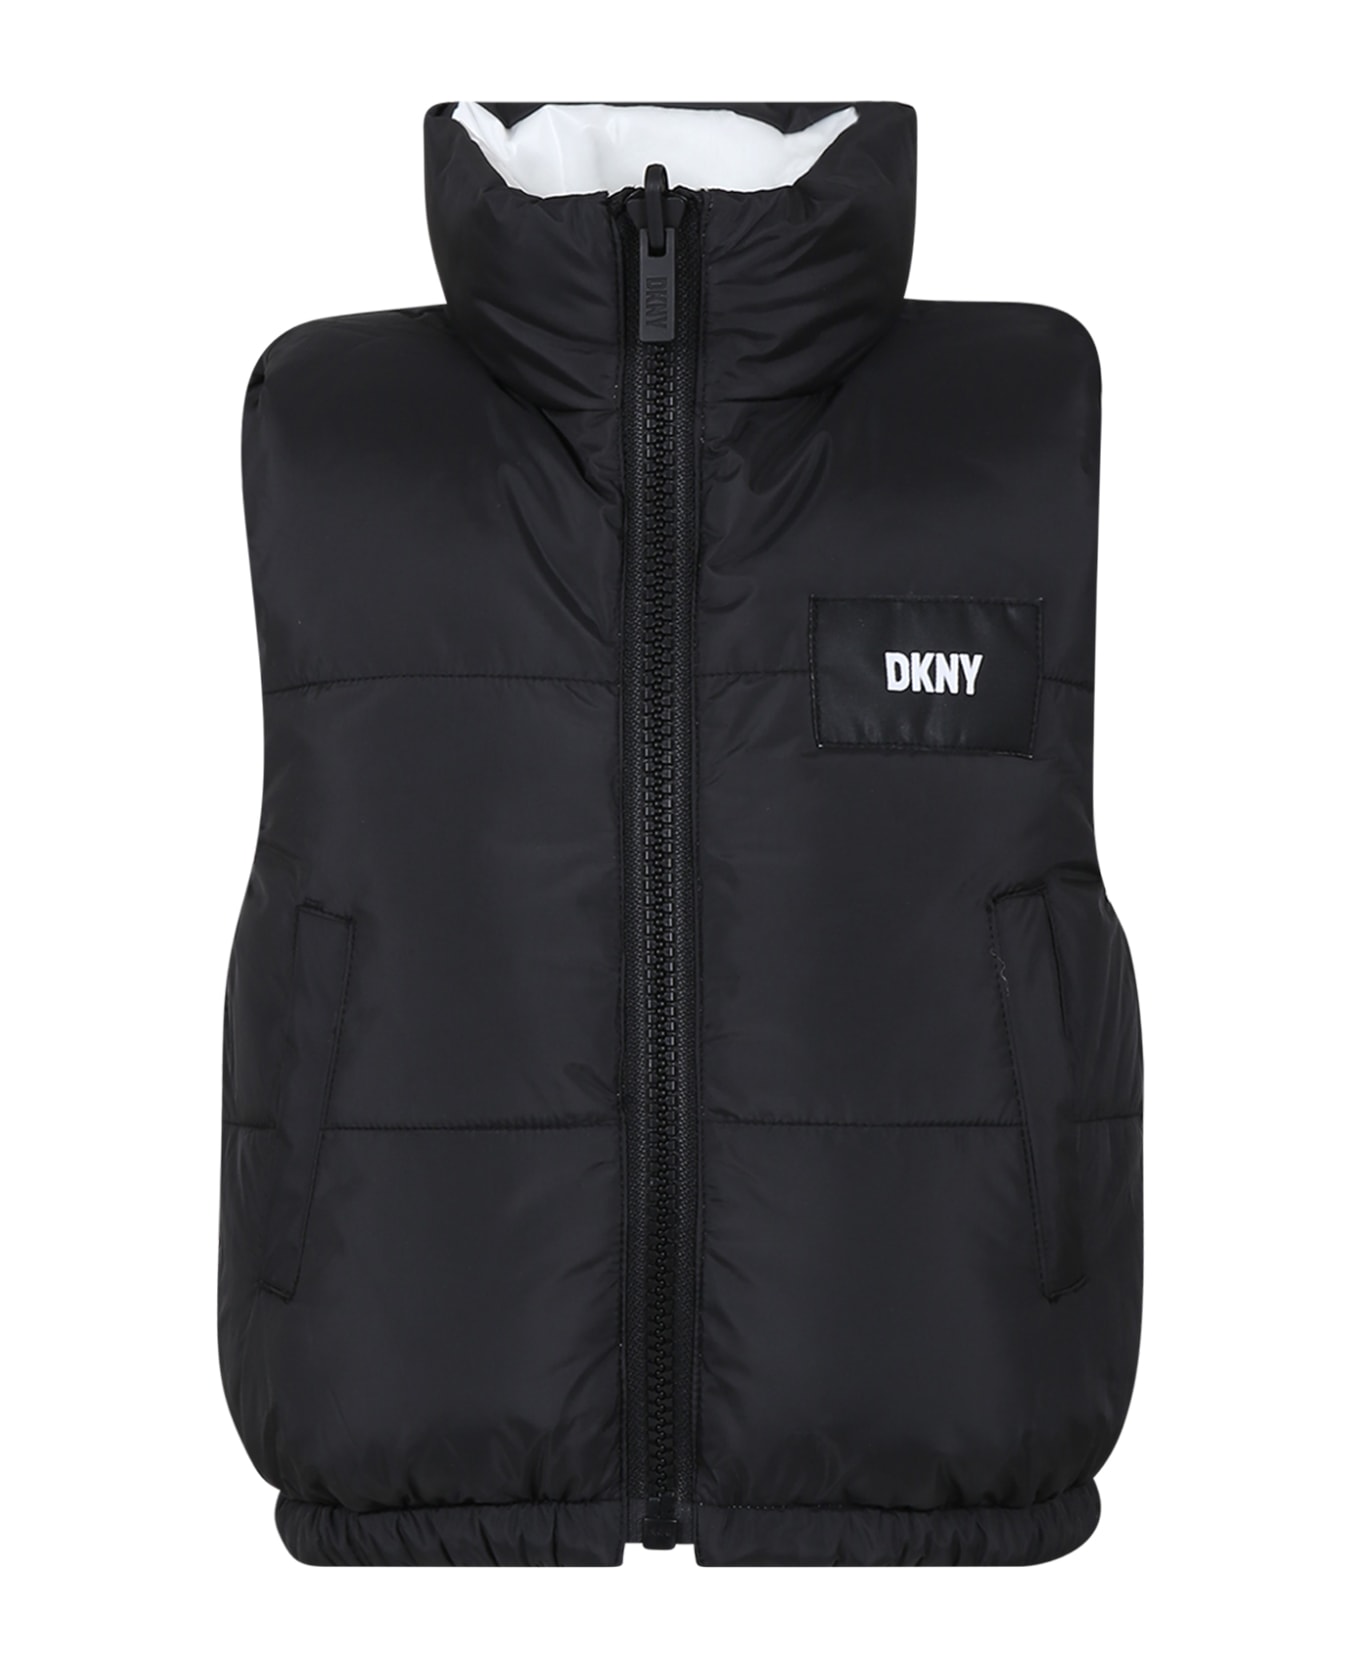 DKNY Reversible White Vest For Girl - Unico